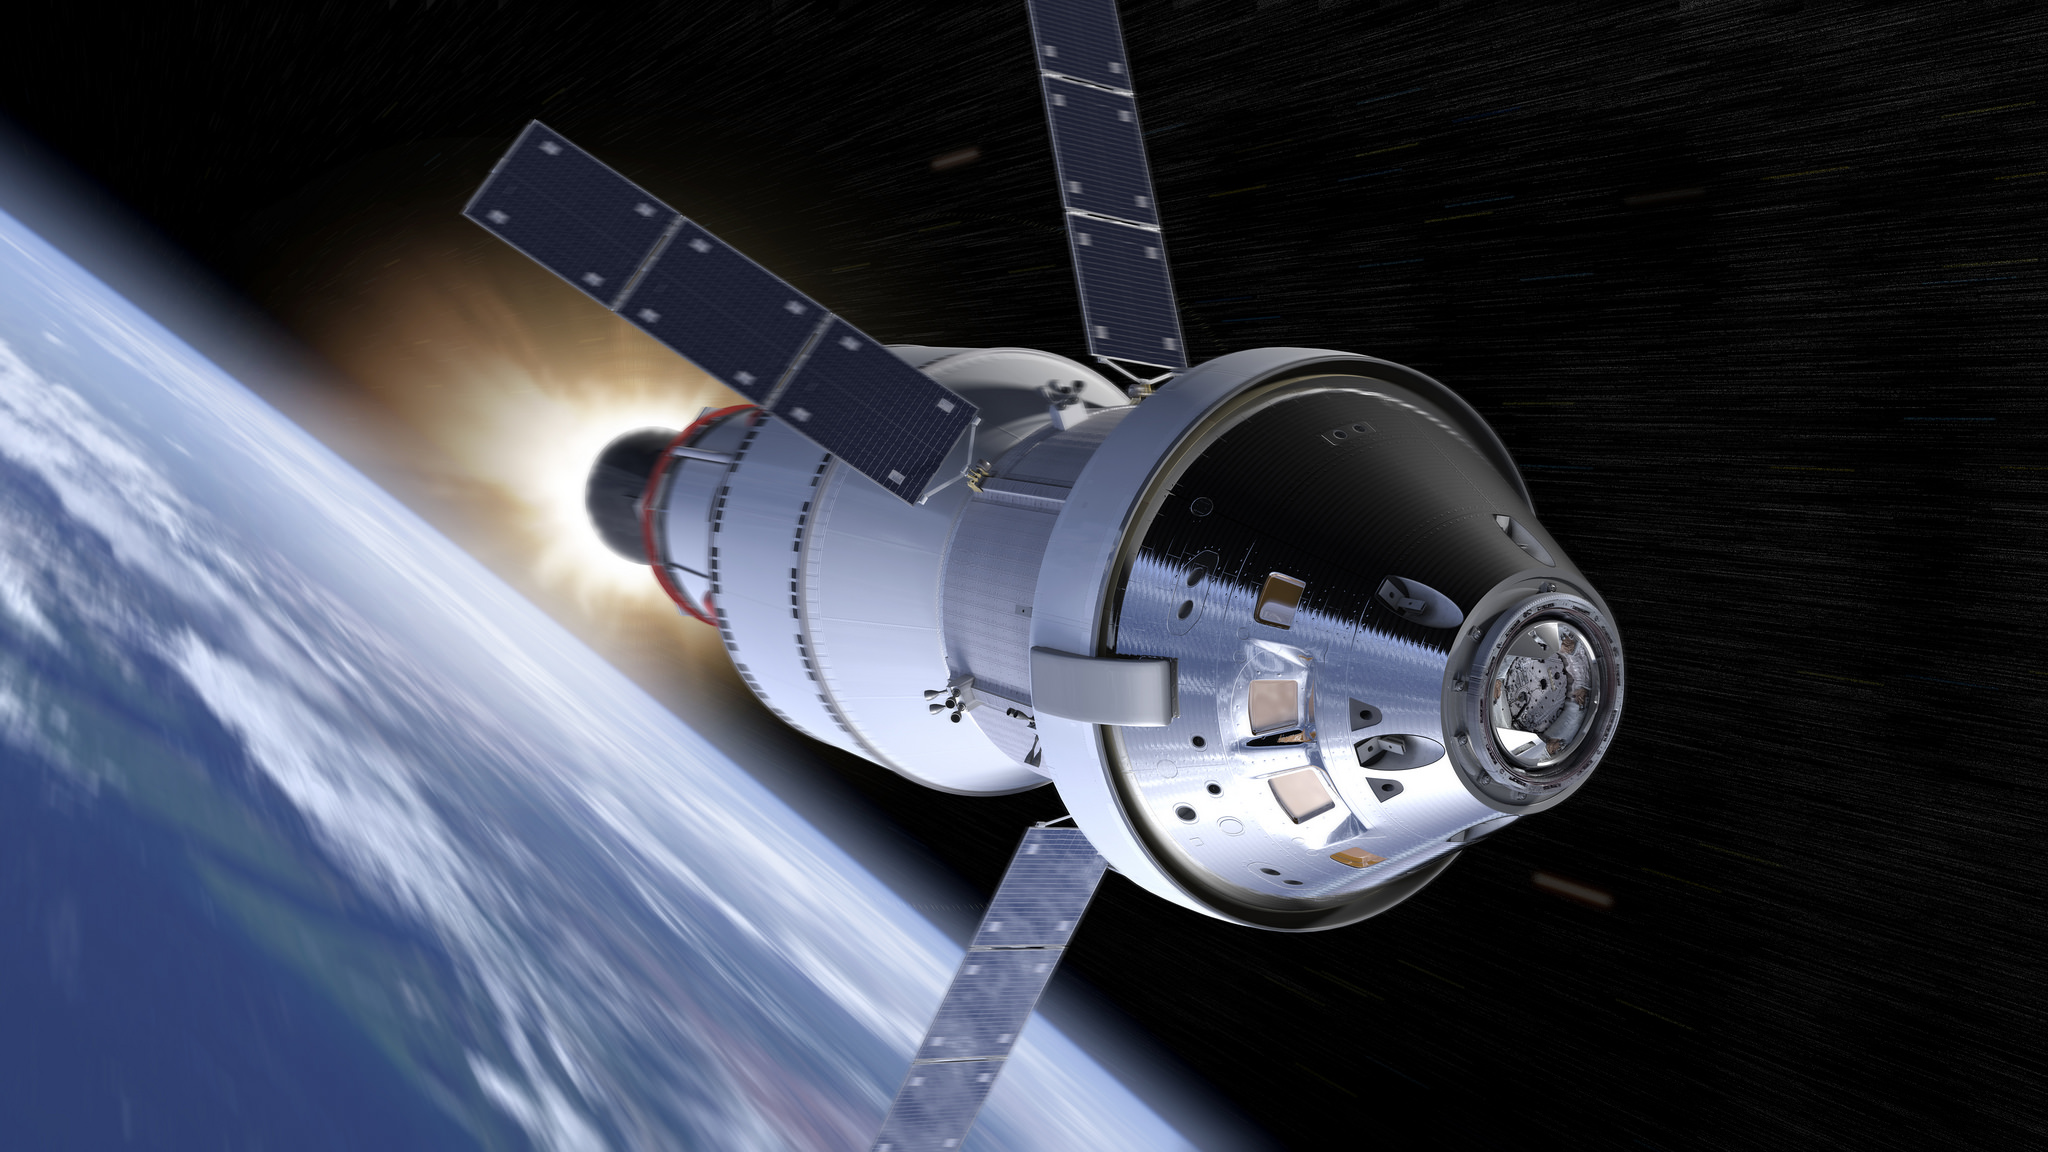 NASA Orion Spacecraft